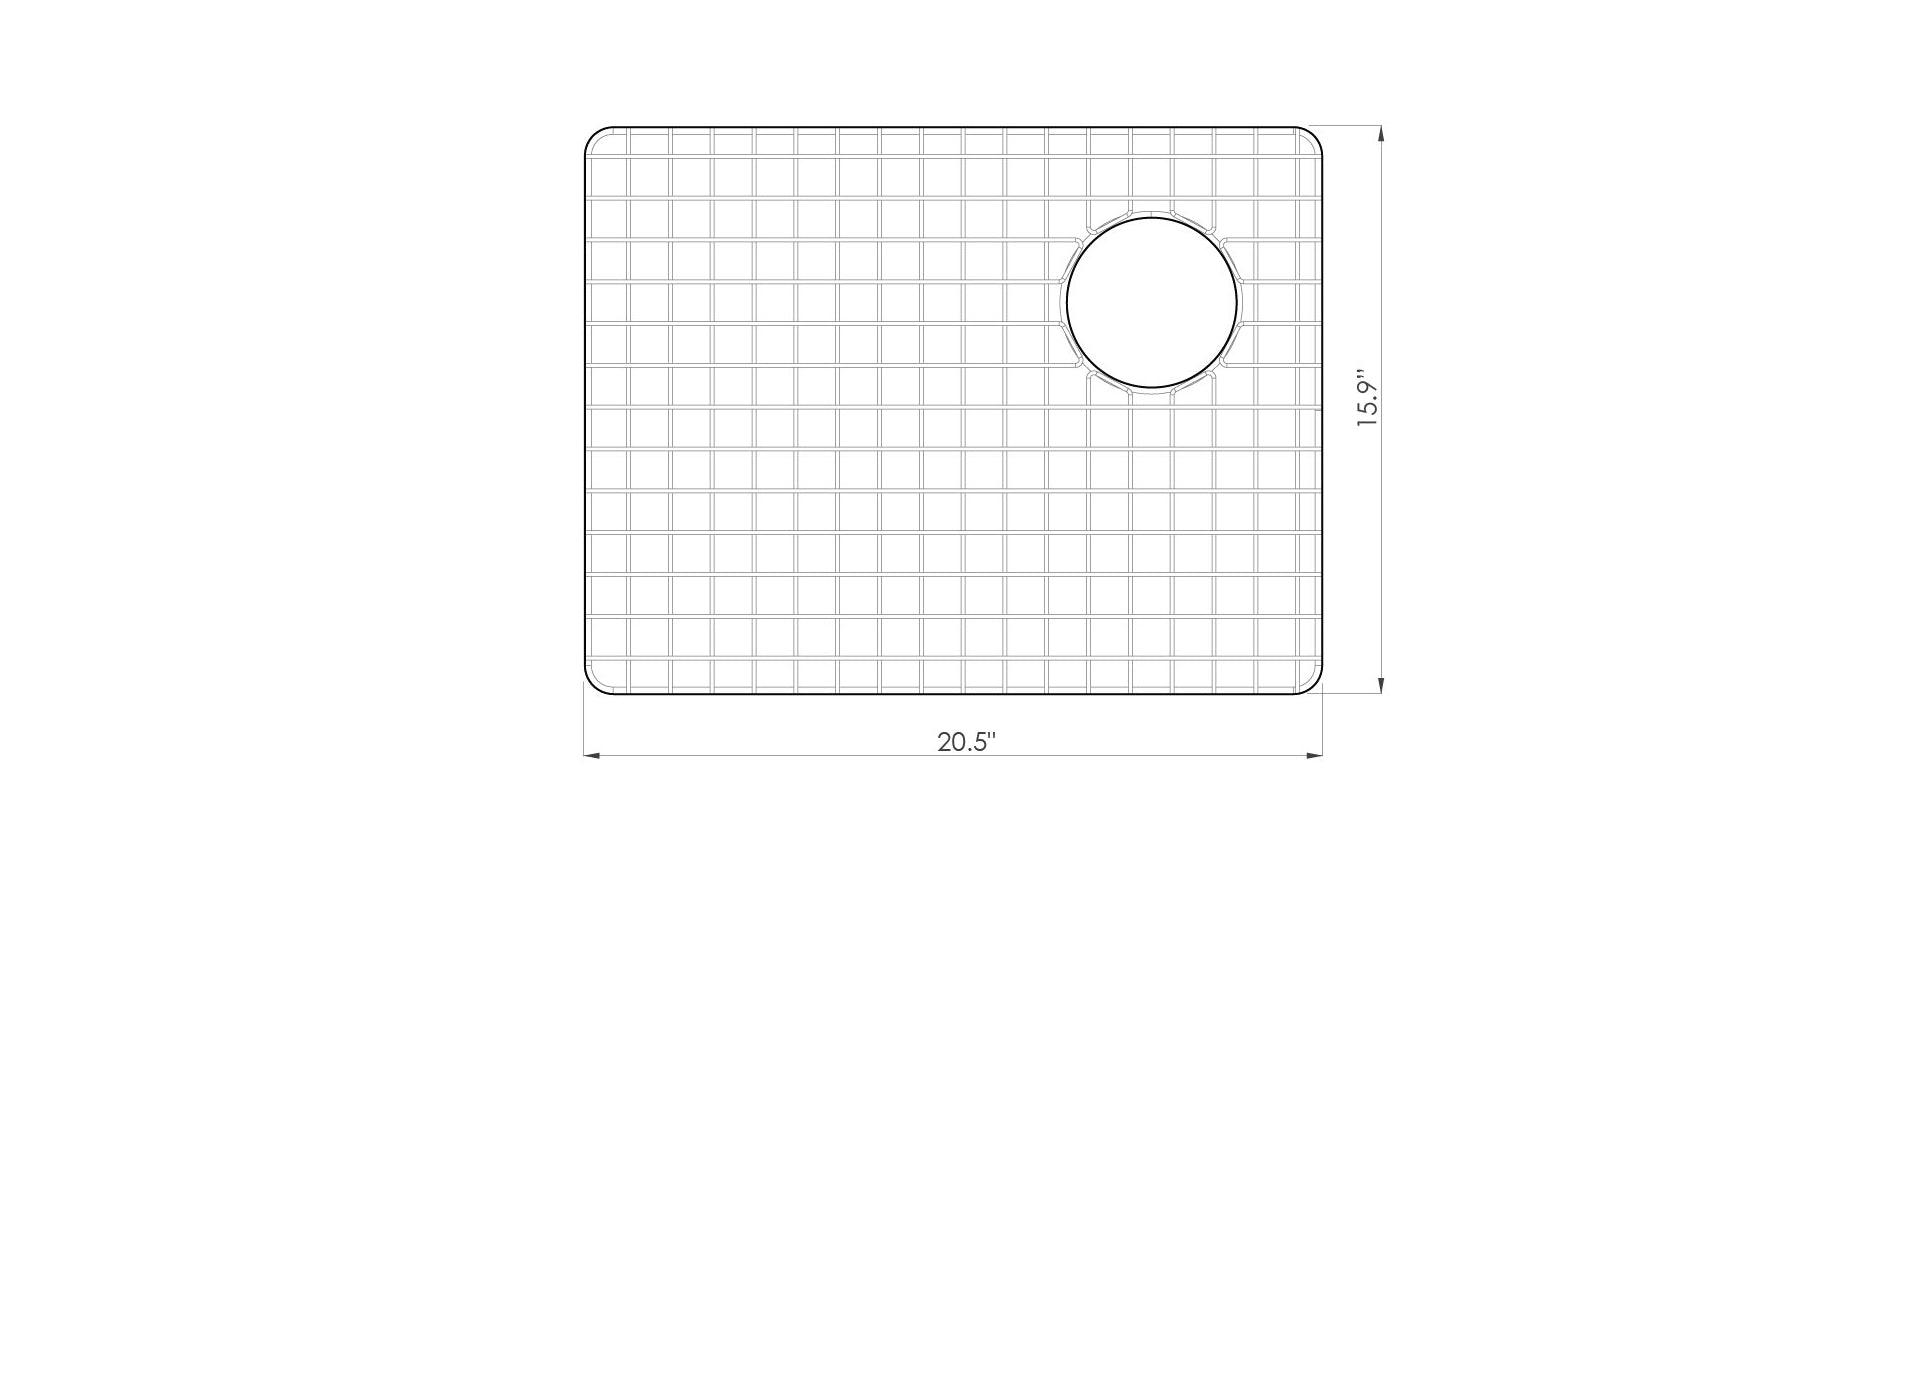 5S22R stainless steel prep sink grid dimensions